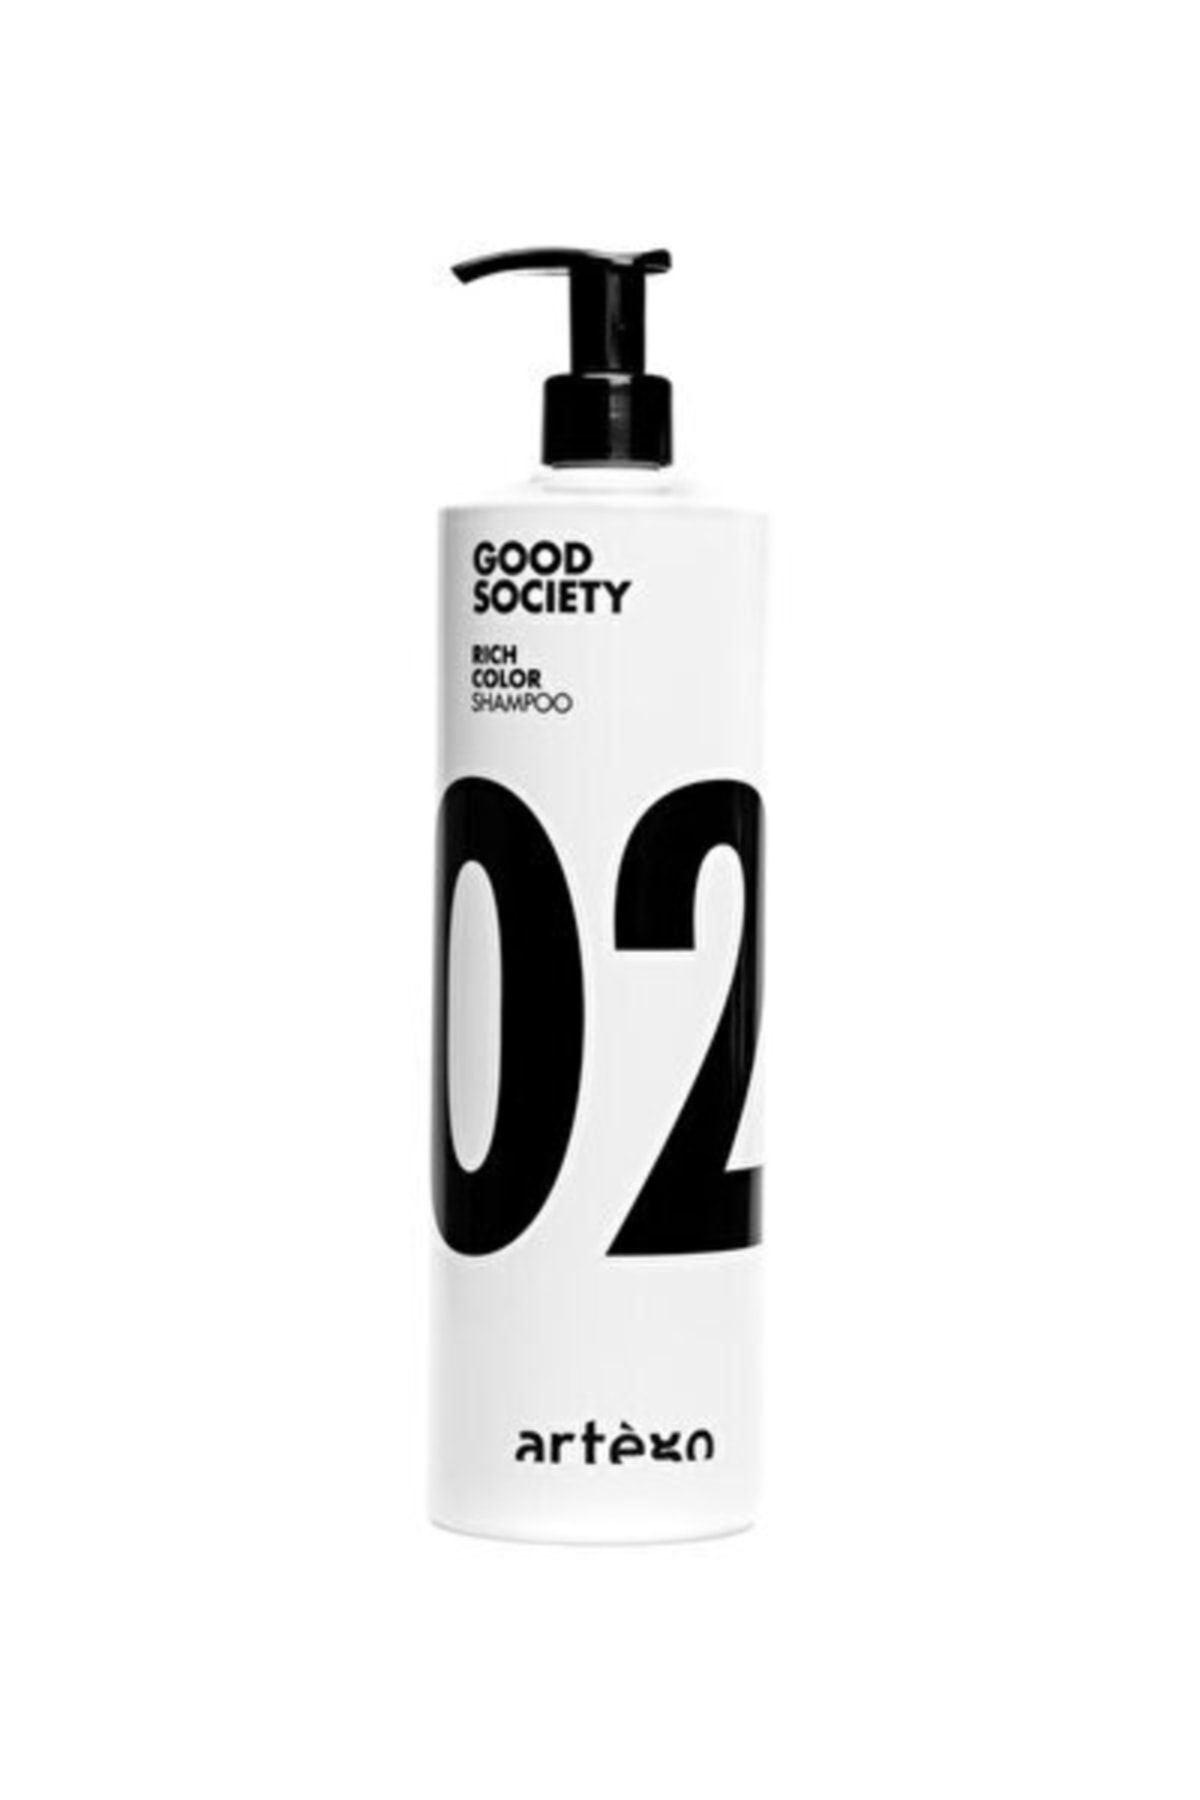 Artego Good Society 02 Rıch Color Shampo 1000 ml Boyalı Saçlar Için Renk Koruyucu Şampuan